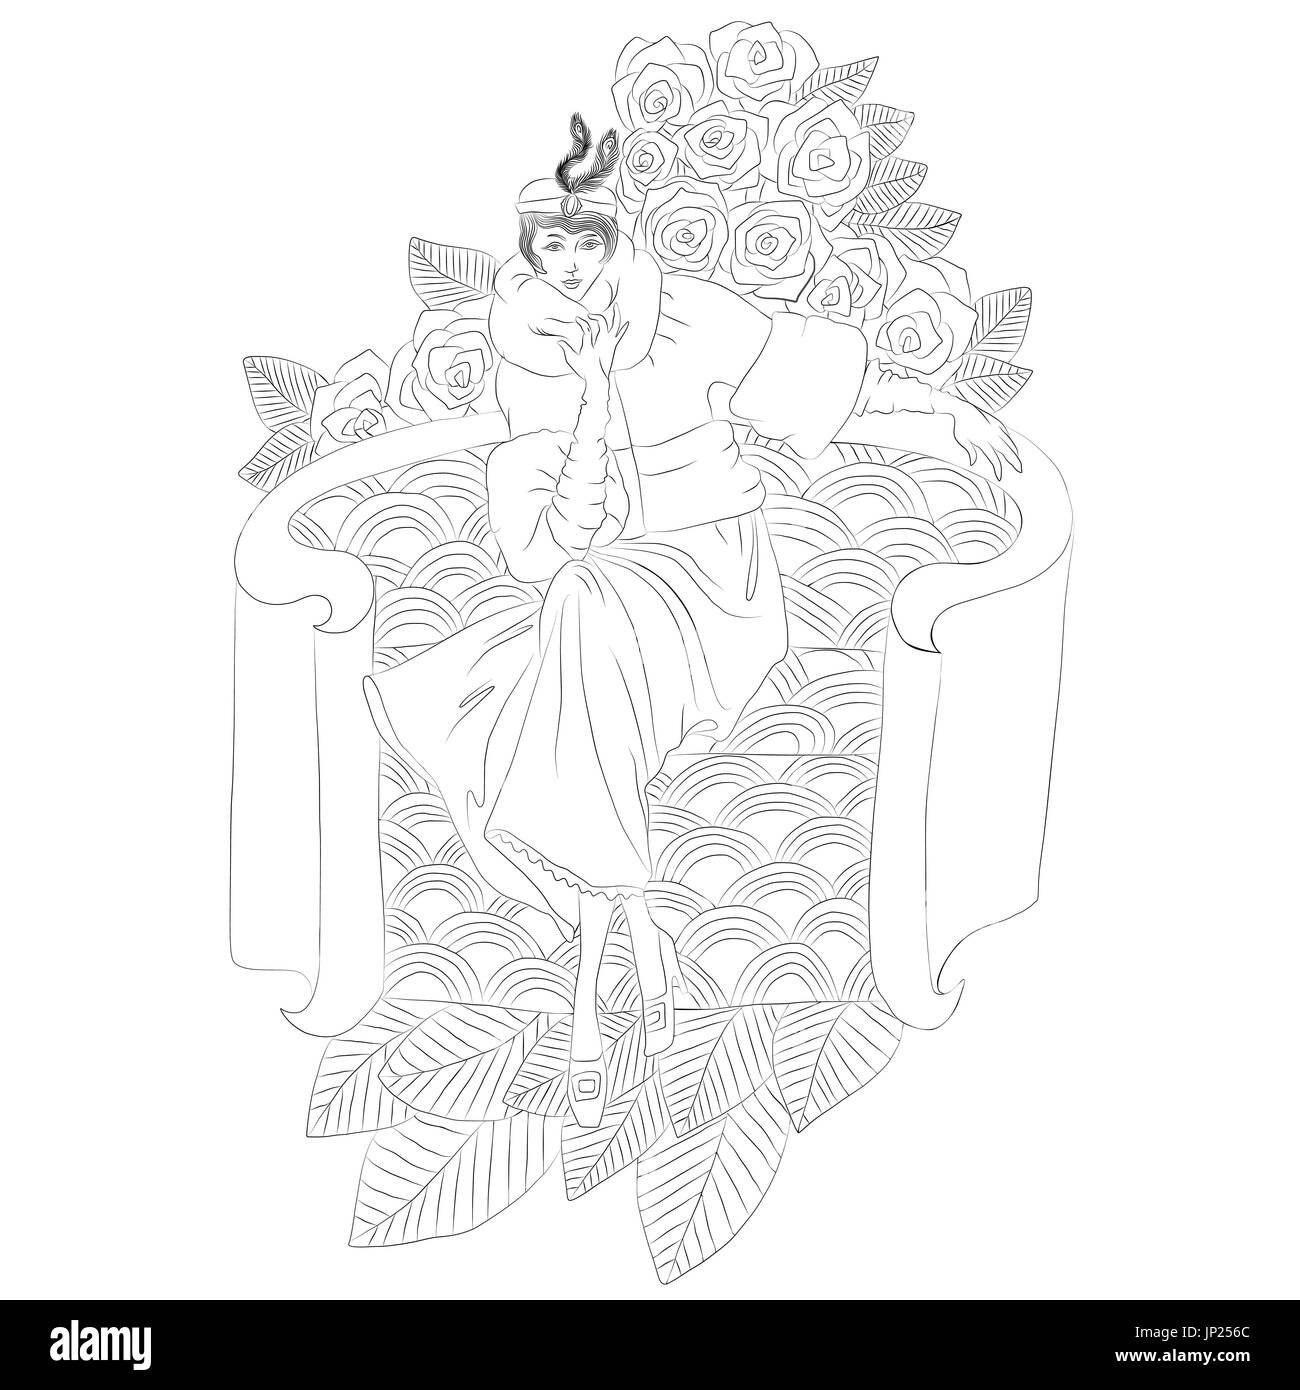 Ungefärbt schöne Mode Frau mit Blumen im retro-Stil. Malbuch. Vektor-Illustration. Stock Vektor